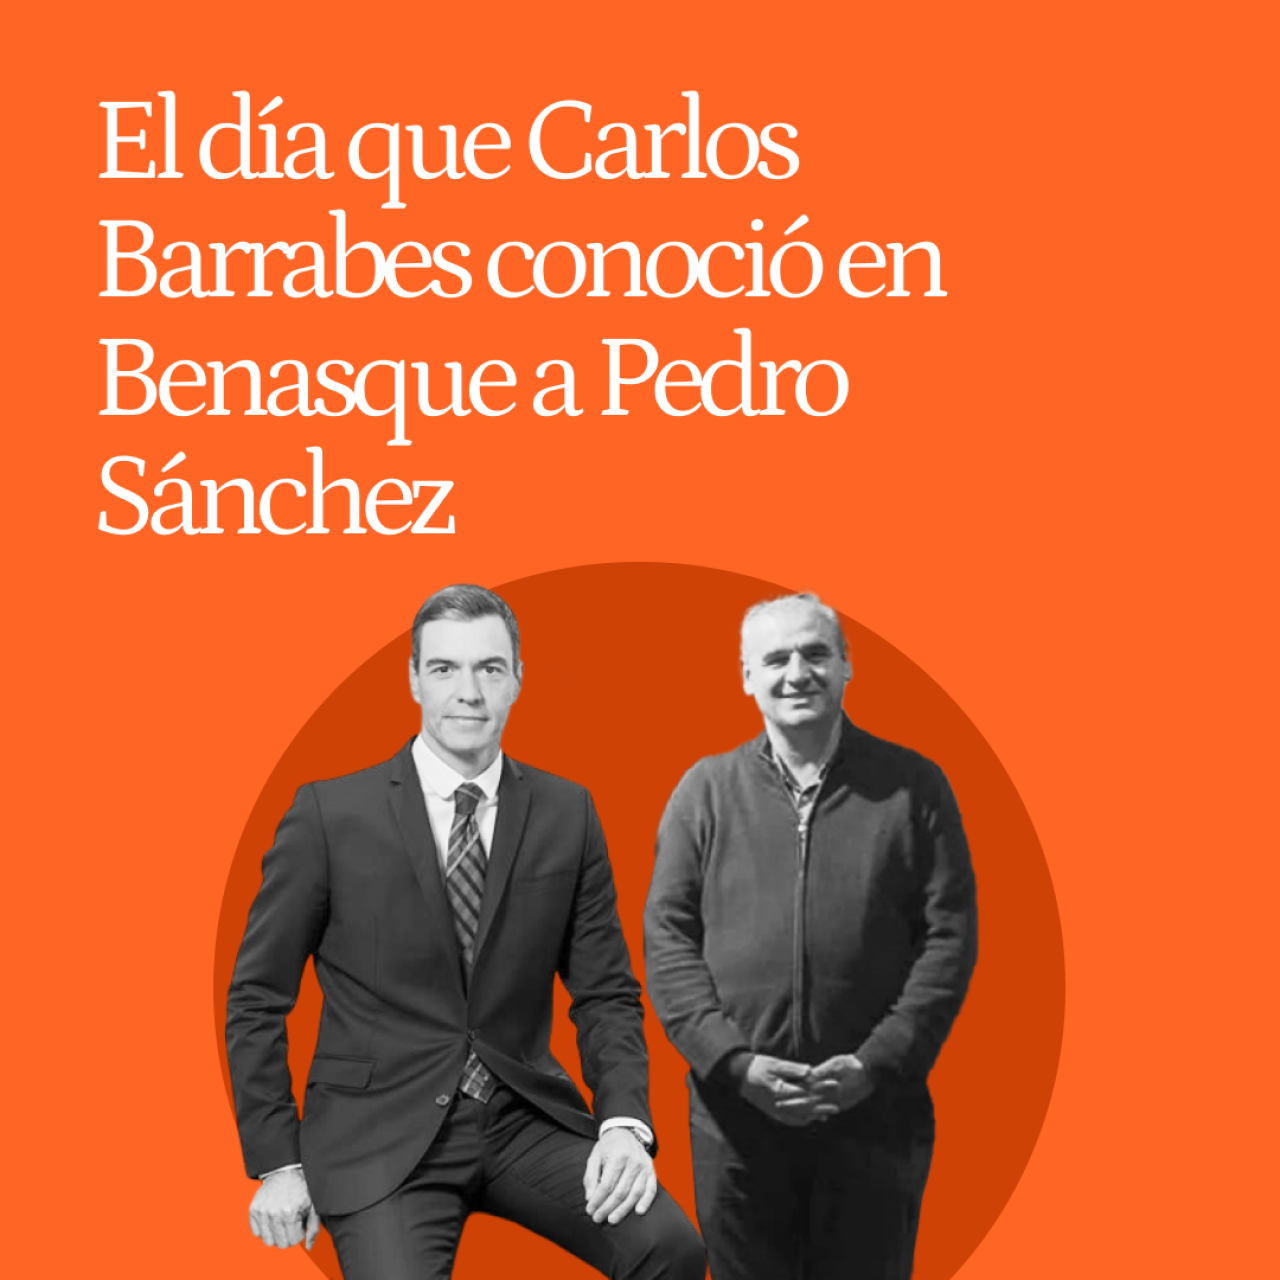 El día que Carlos Barrabés conoció en Benasque a Pedro Sánchez : "No fue una conspiración de marisquería"